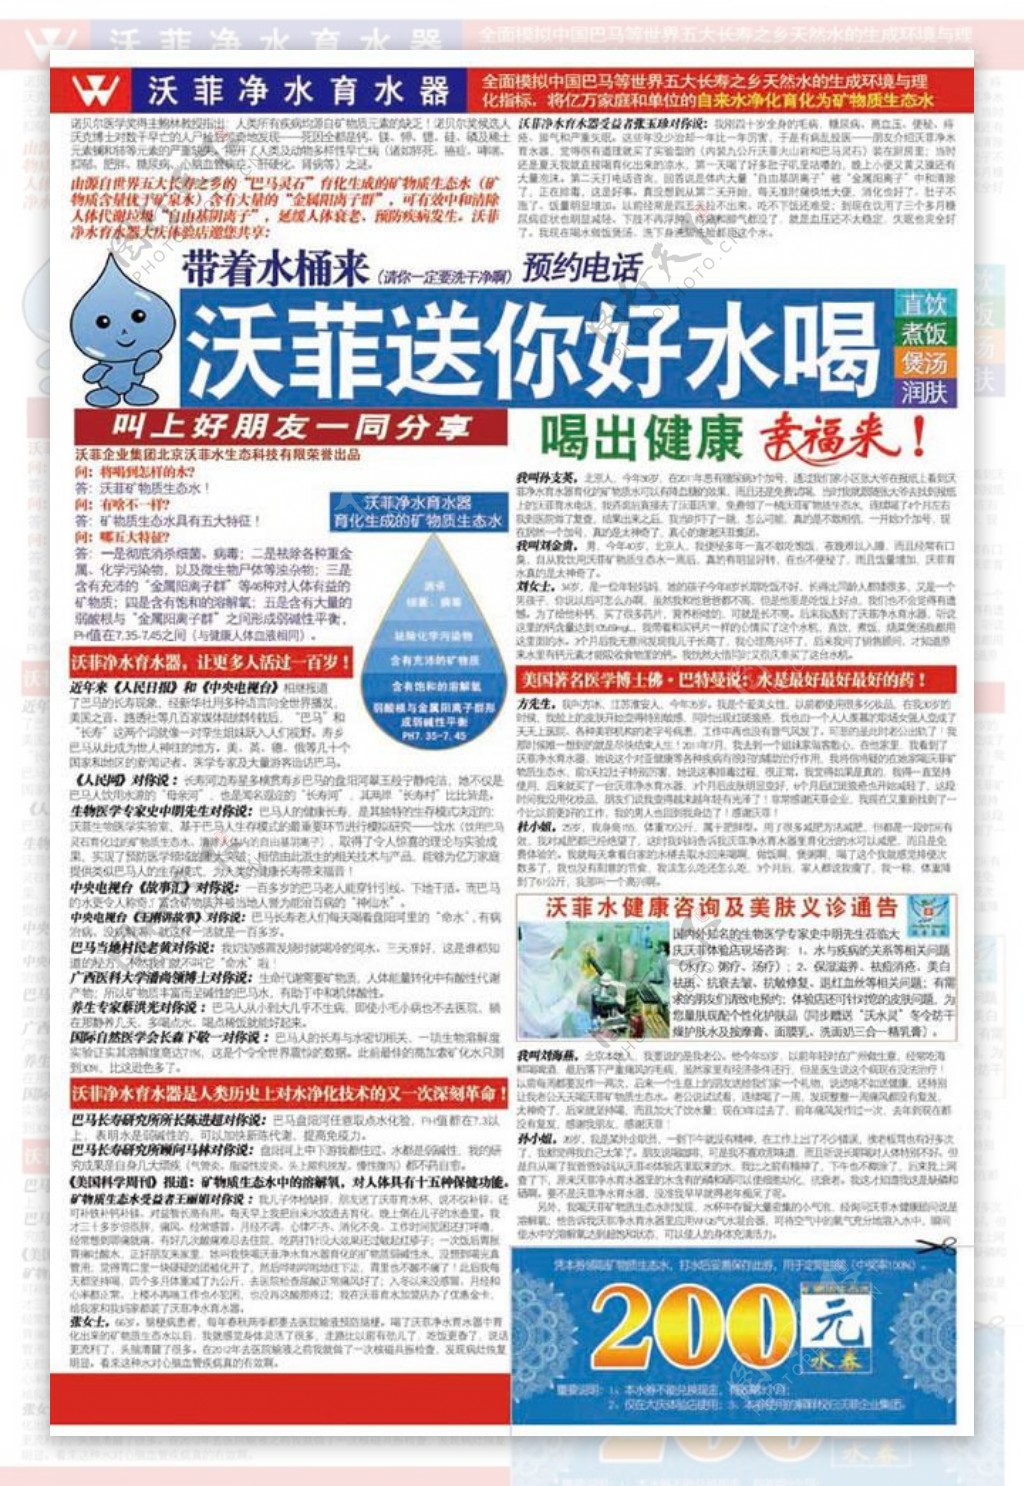 净水育水器报纸广告设计psd素材